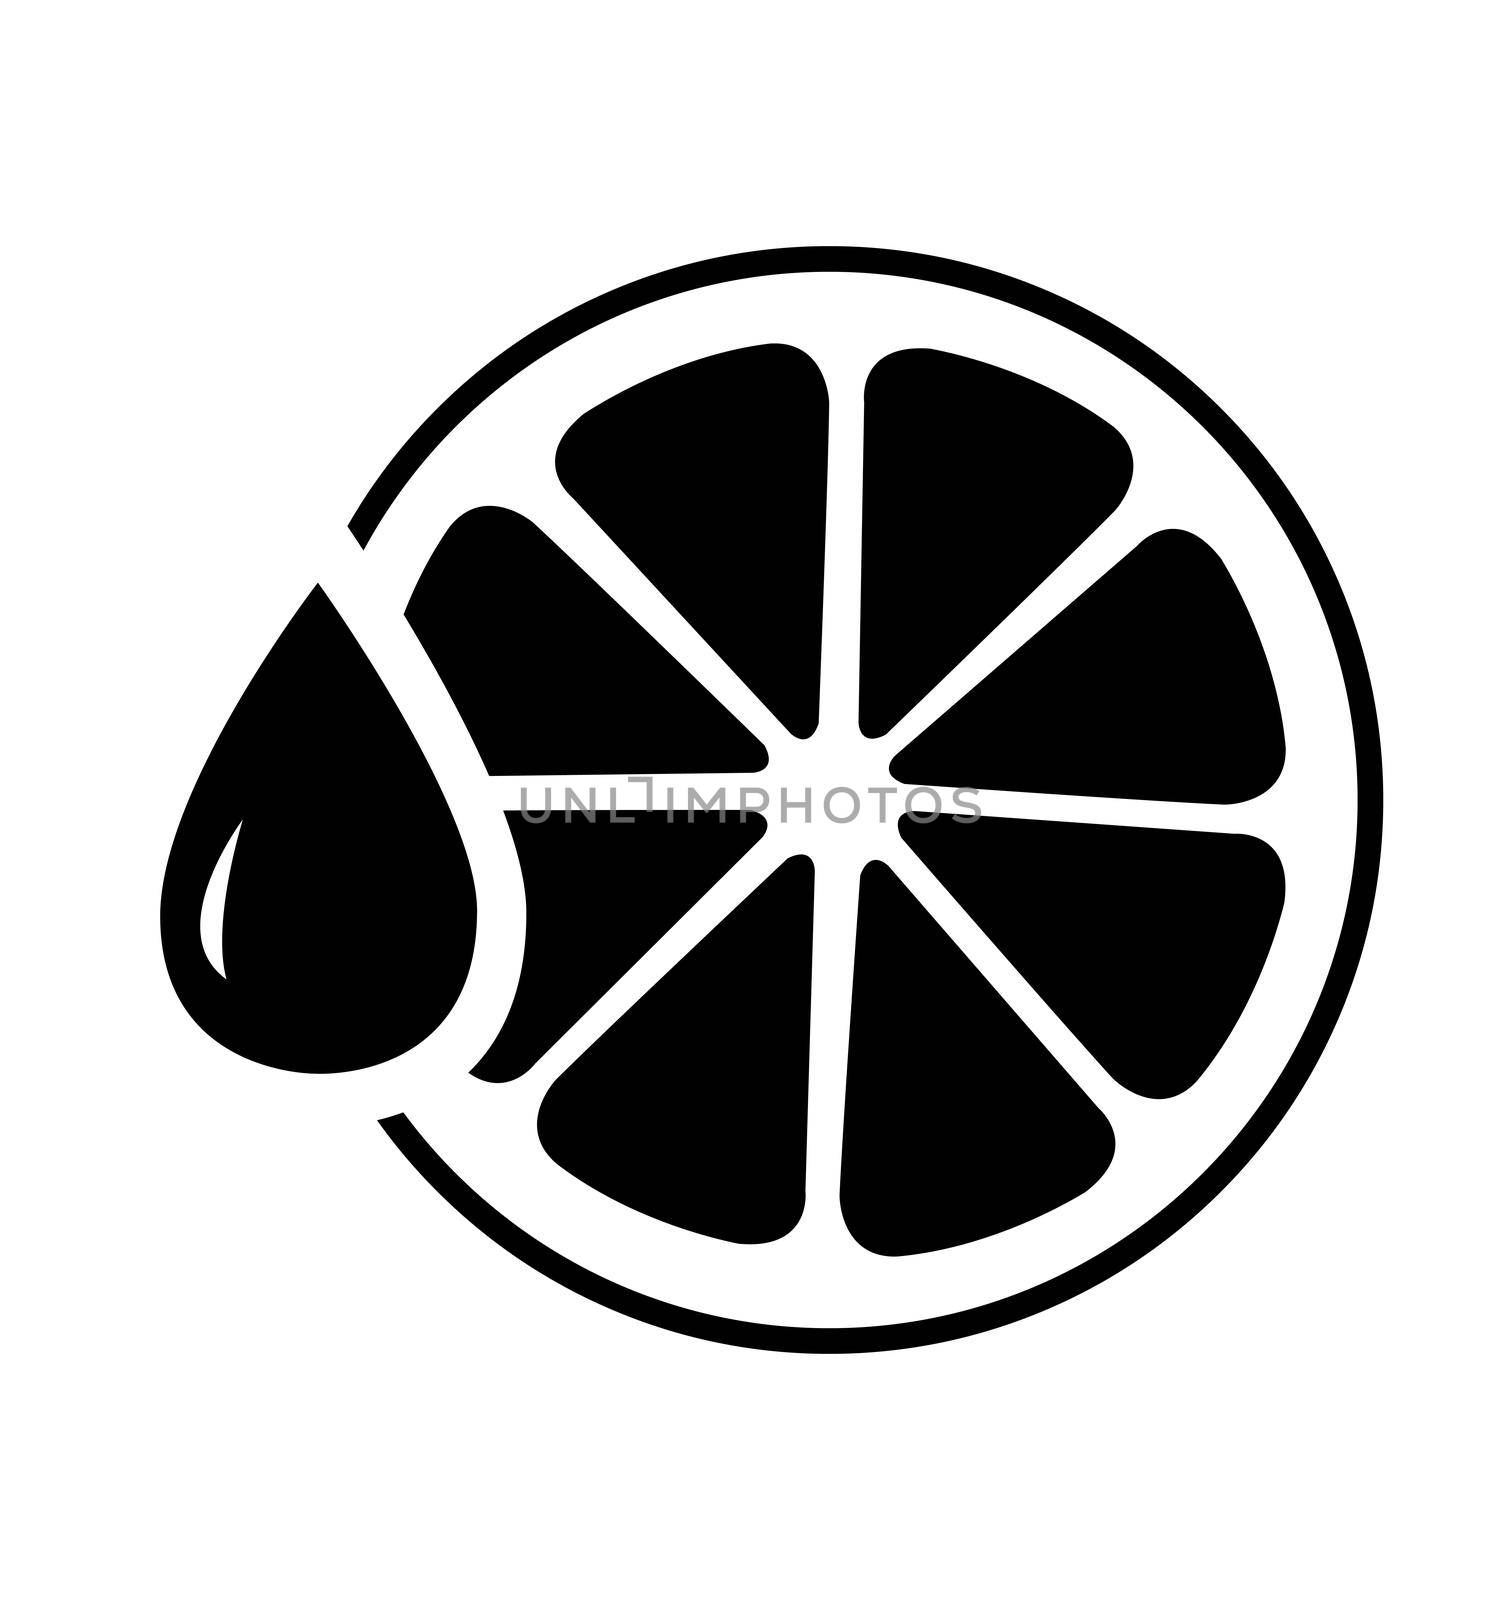 Orange juice icon vector illustration isolated on white background eps 10